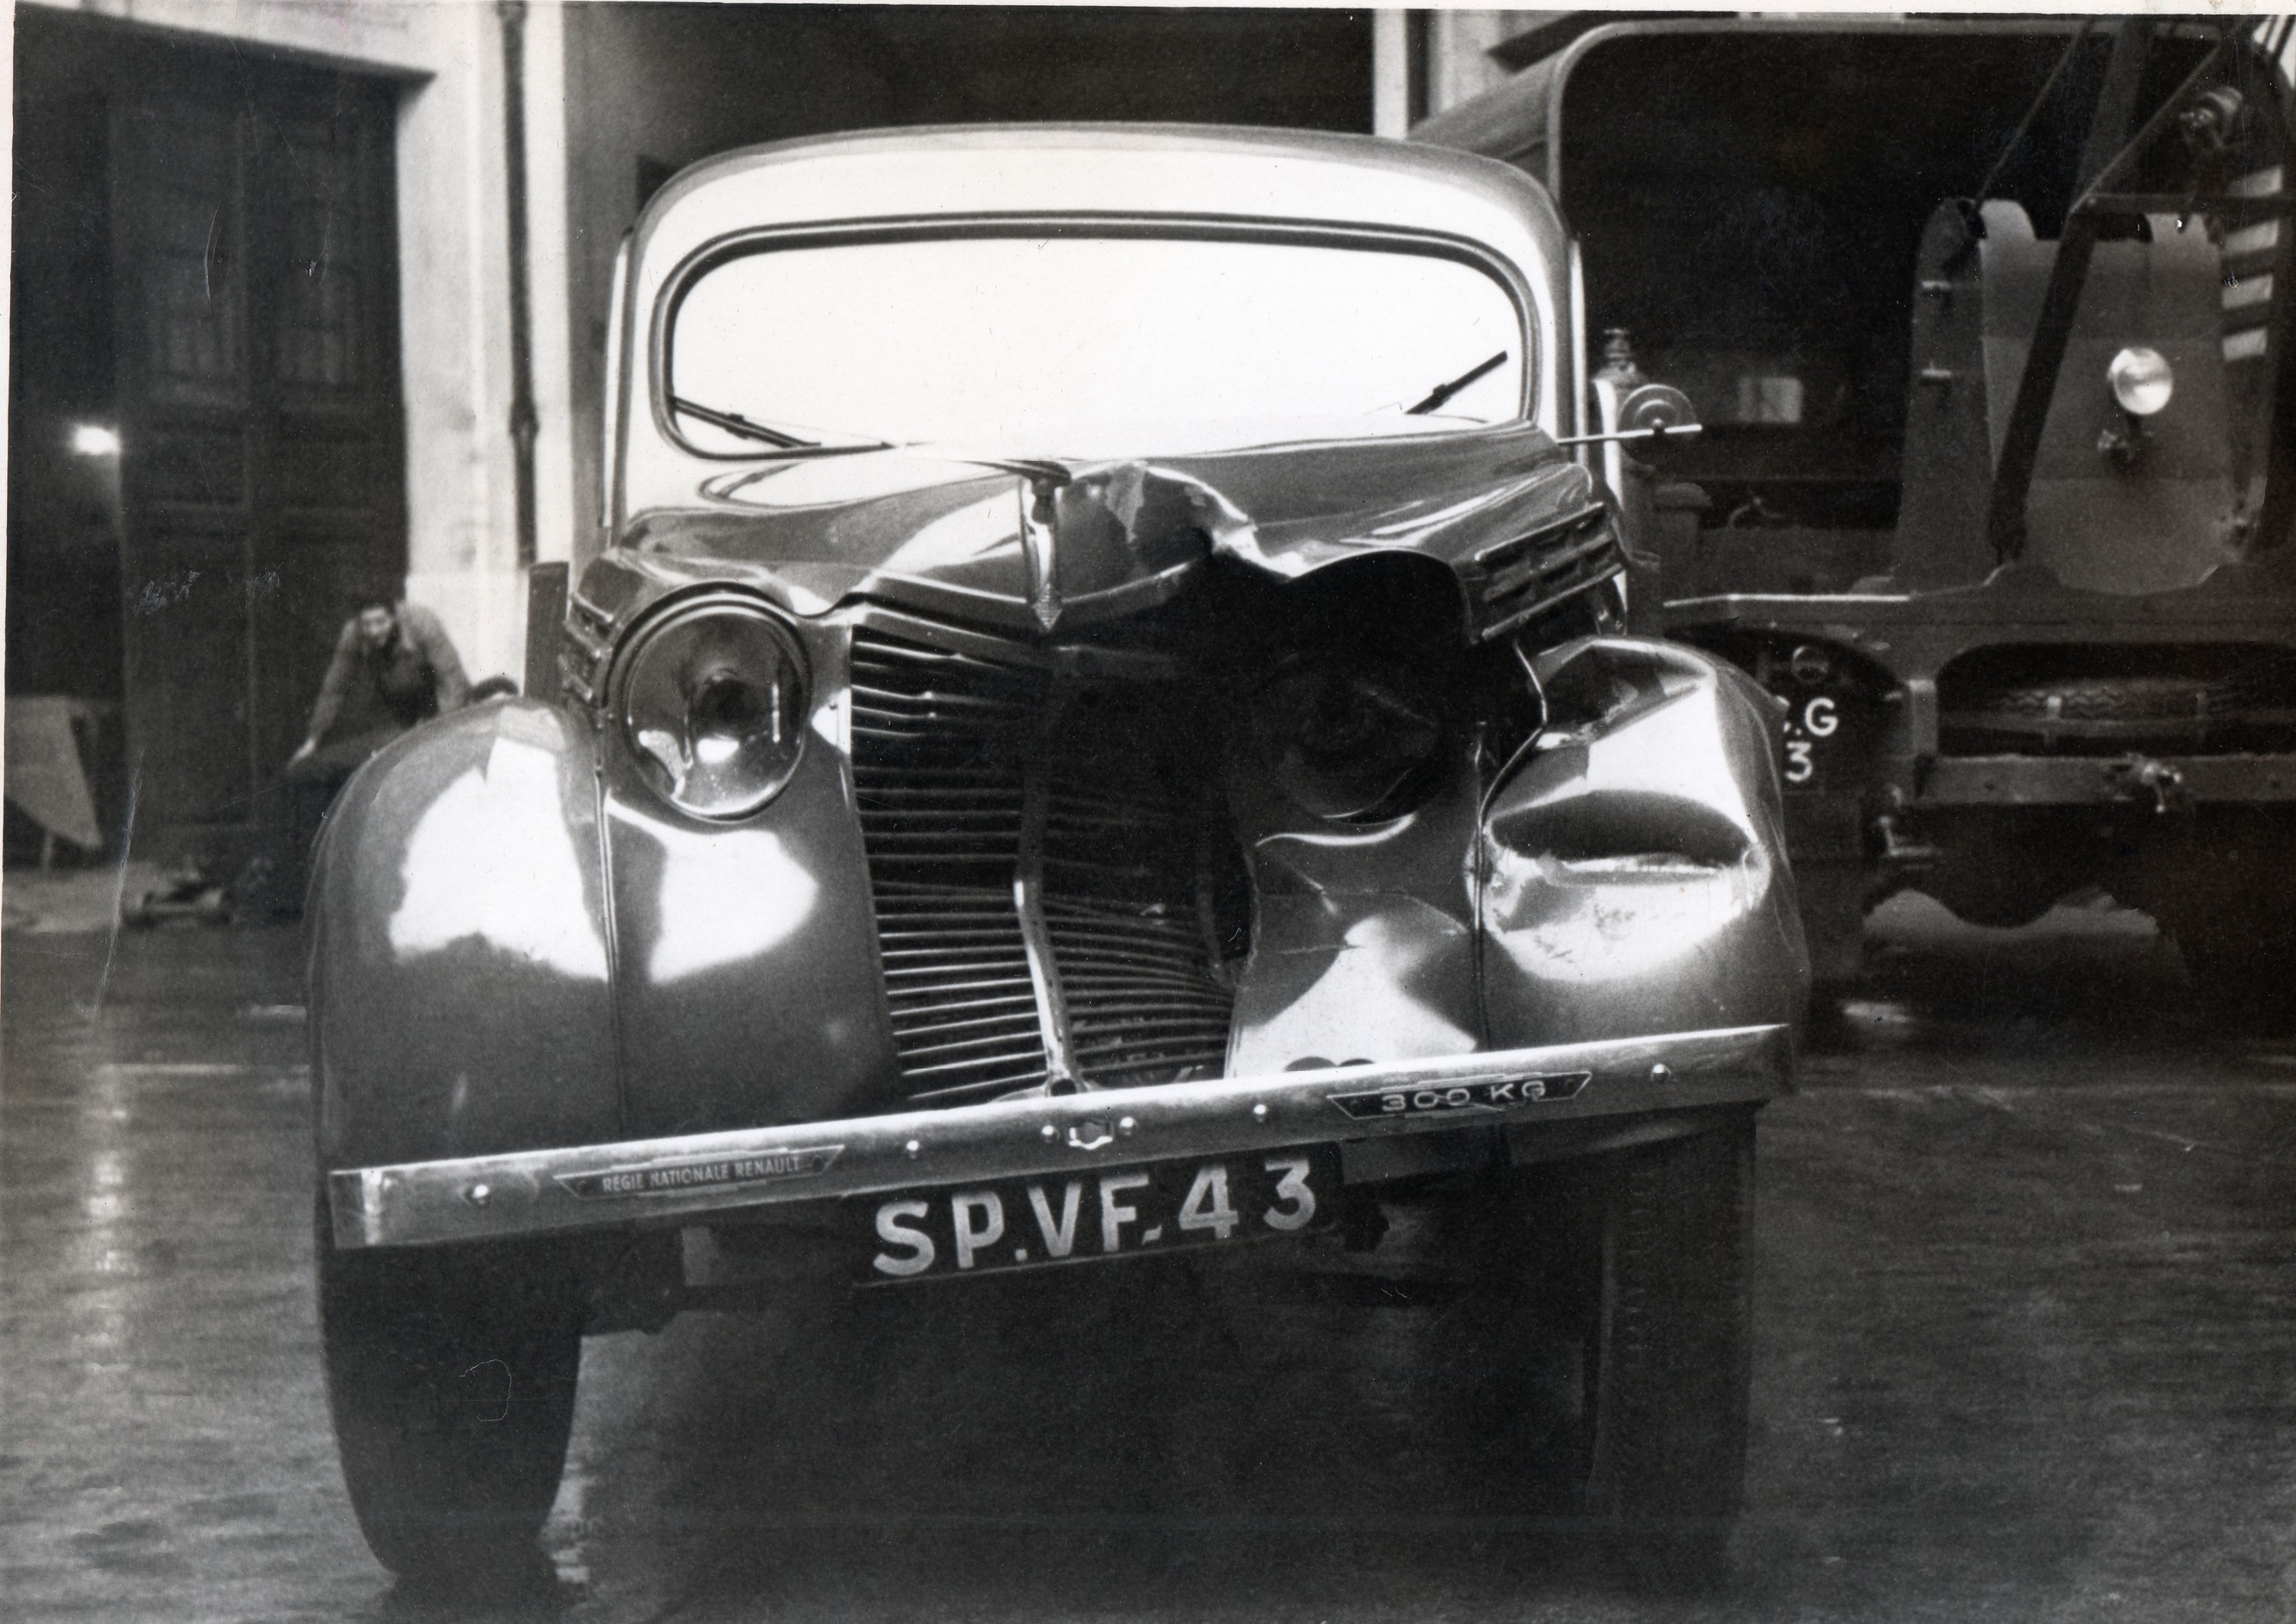 F_1940-50s_PP-SPVF-043-V